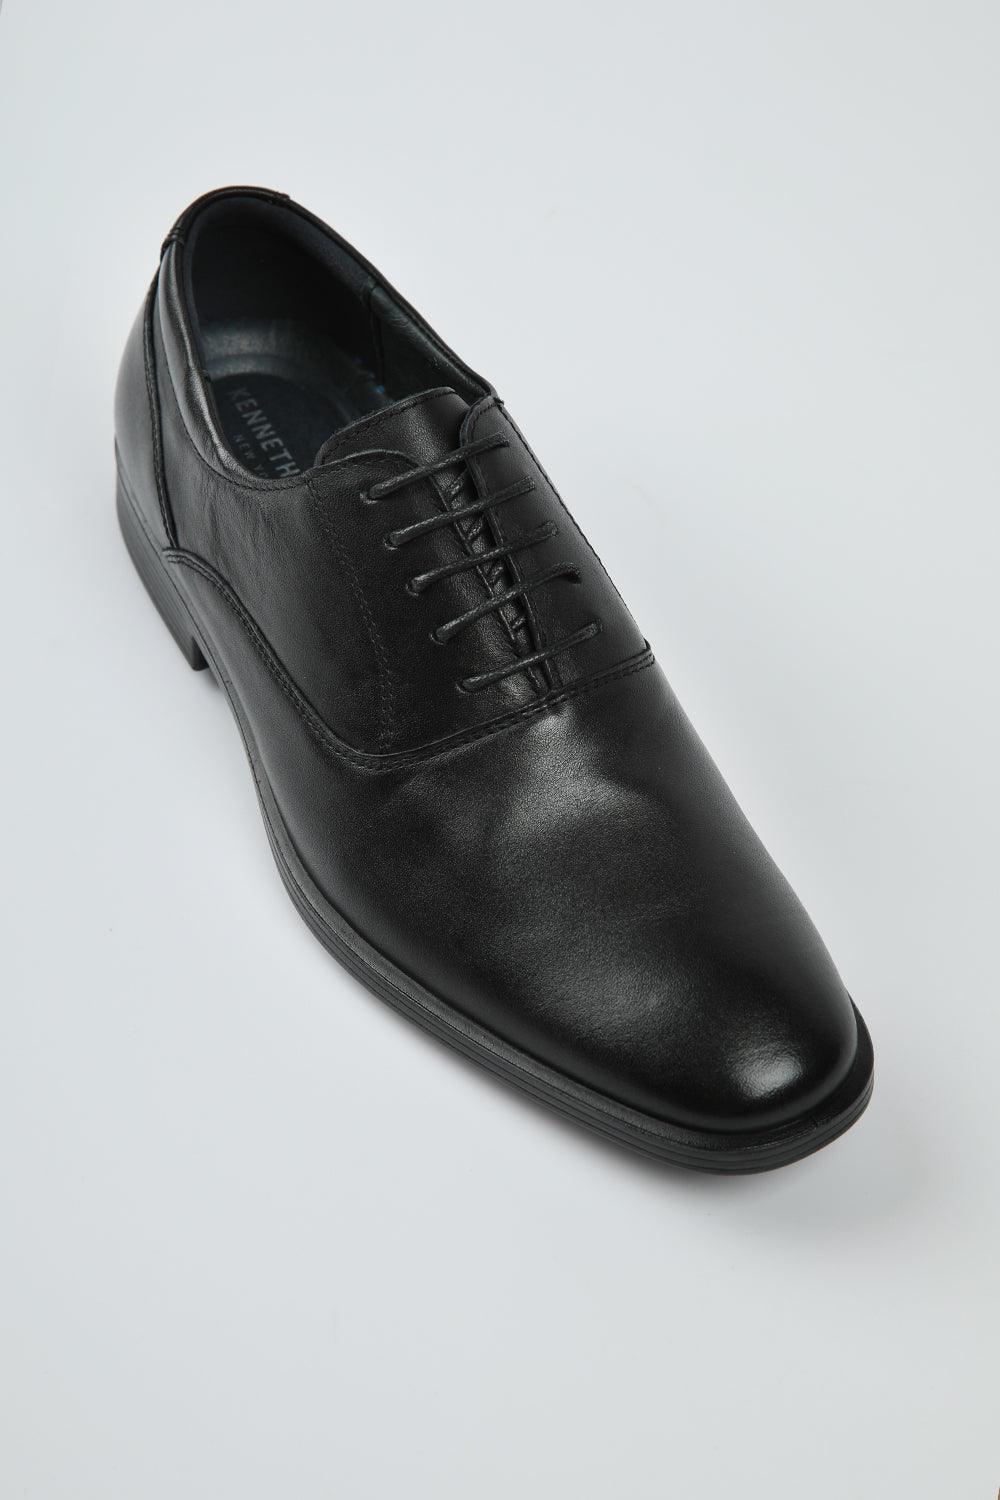 KENNETH COLE - נעלי עור אלגנטיות - MASHBIR//365